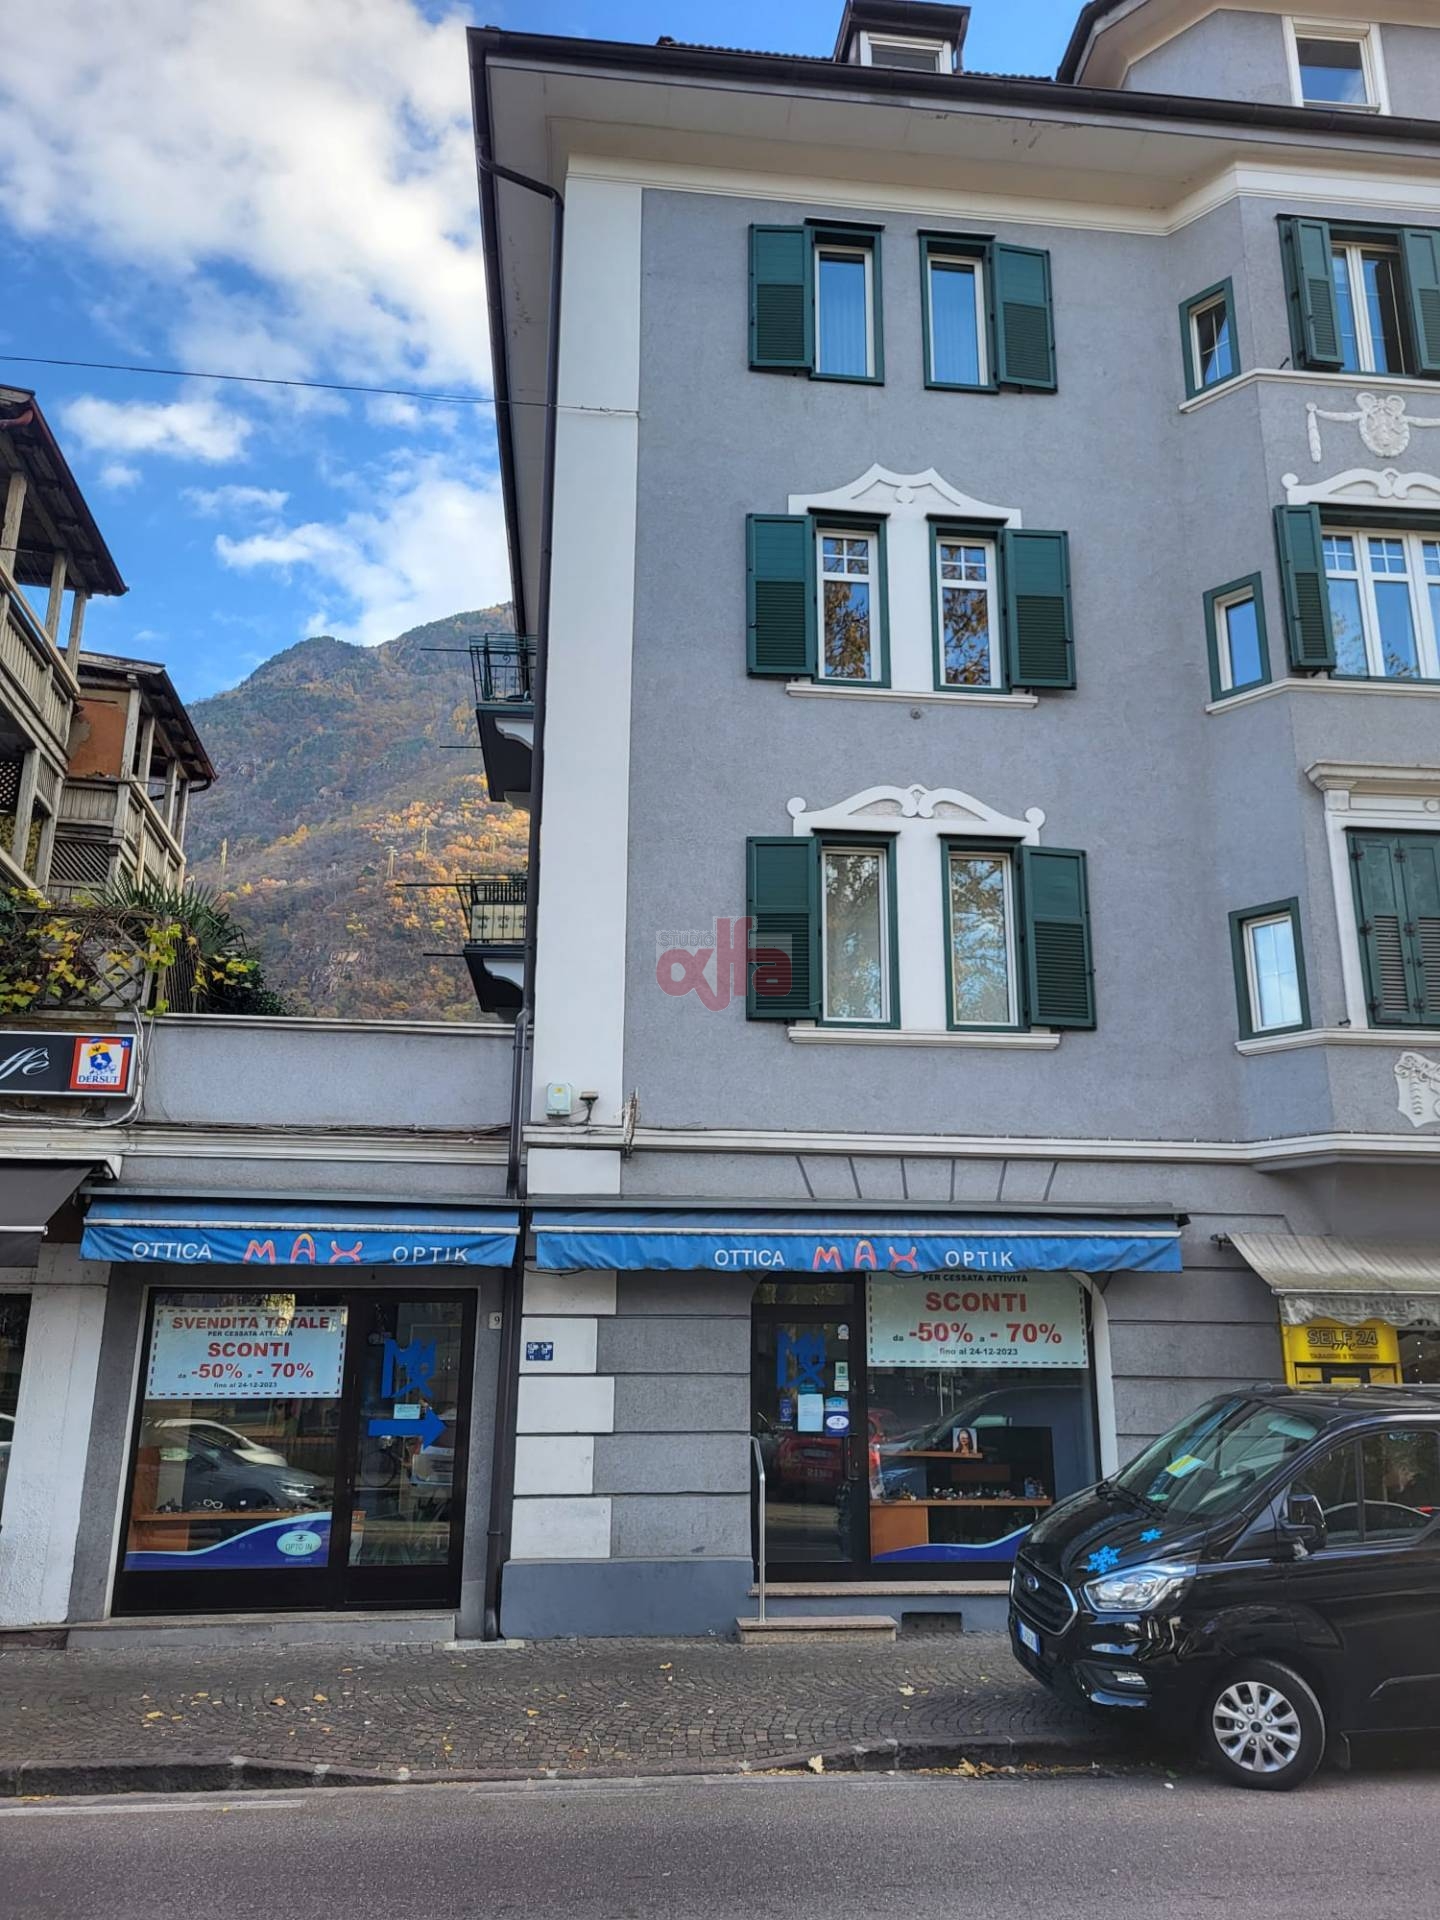 Bolzano - Bozen - Via Claudia Augusta